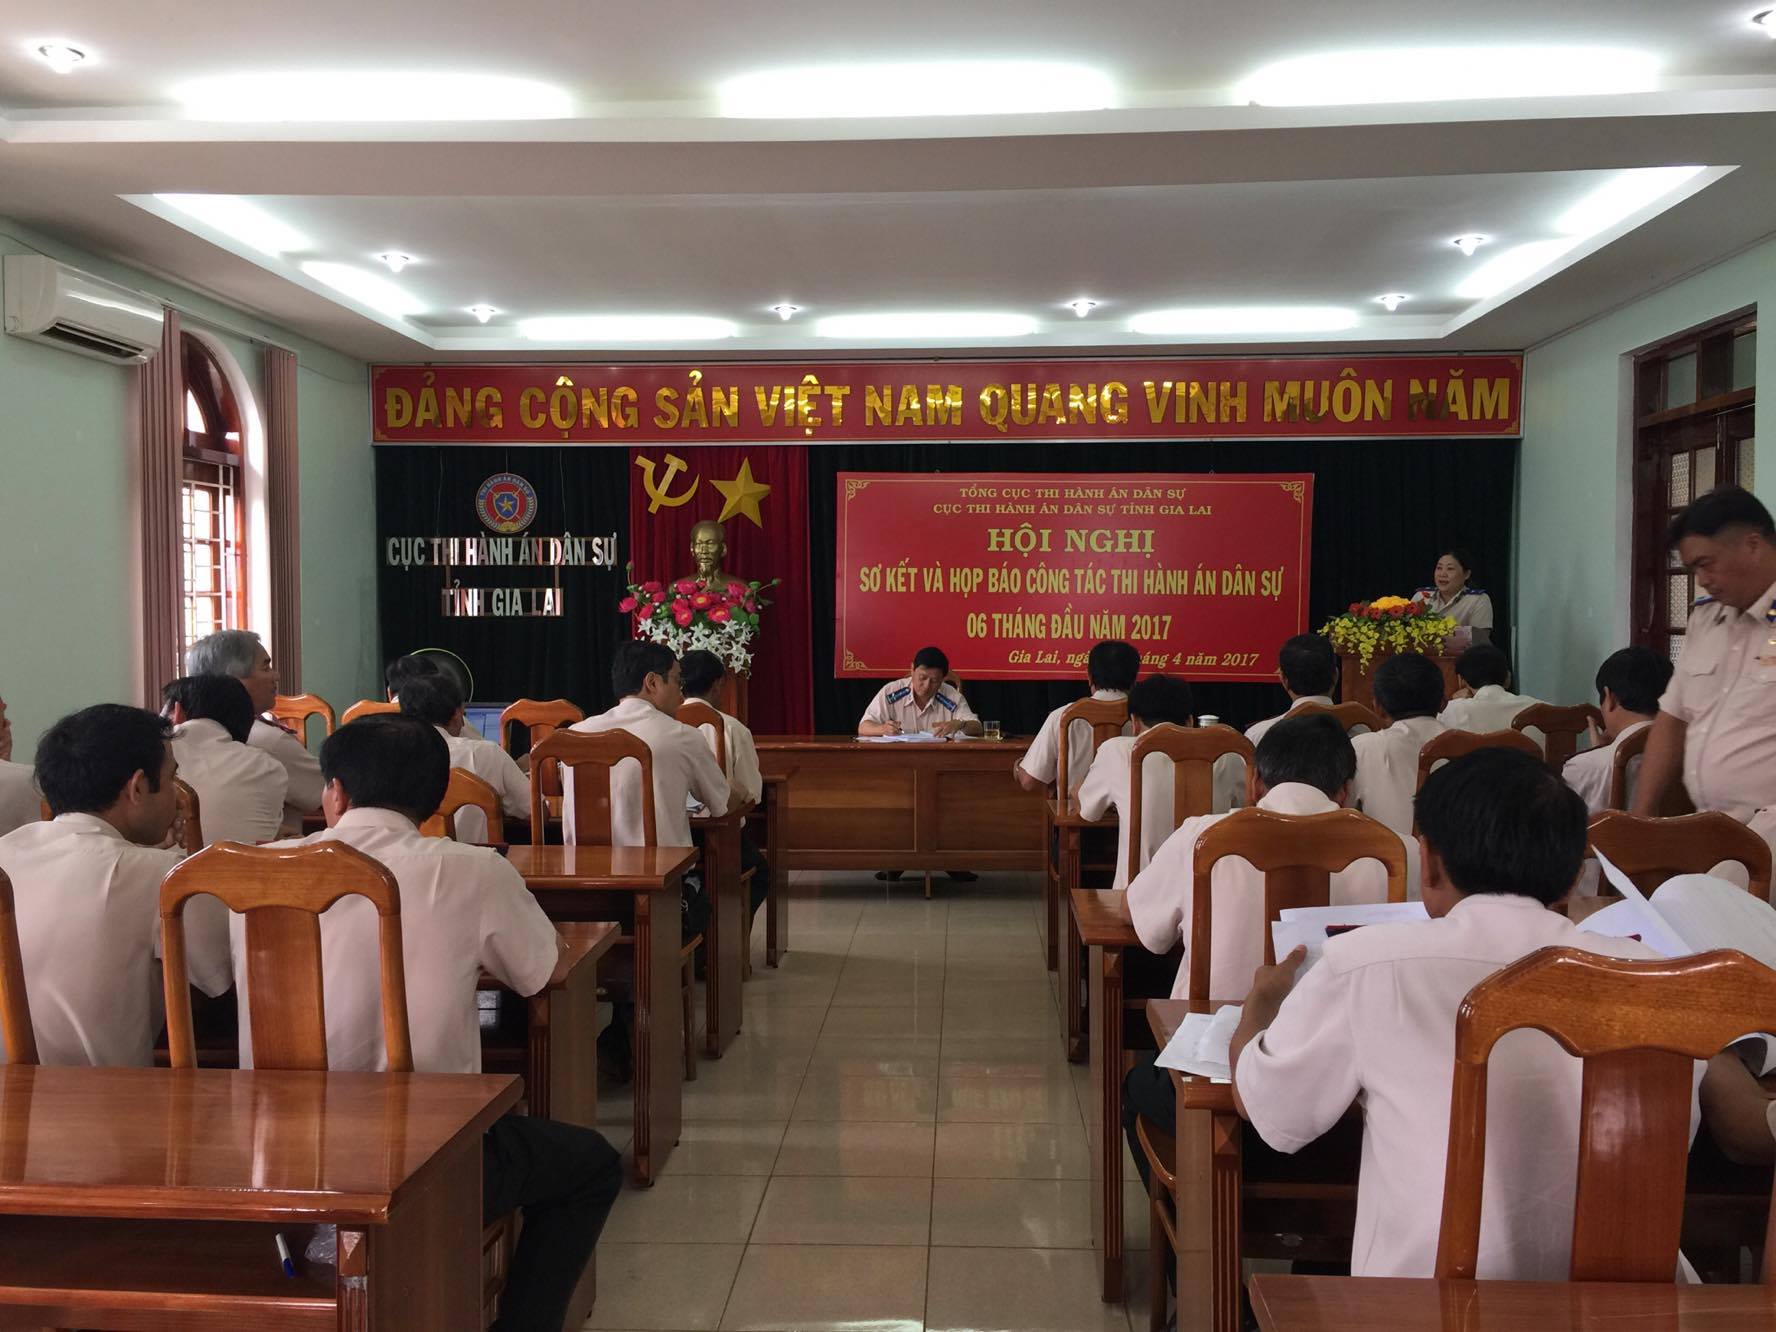 Cục Thi hành án dân sự tỉnh Gia Lai tổ chức Hội nghị sơ kết và họp báo công tác Thi hành án dân sự 6 tháng năm 2017